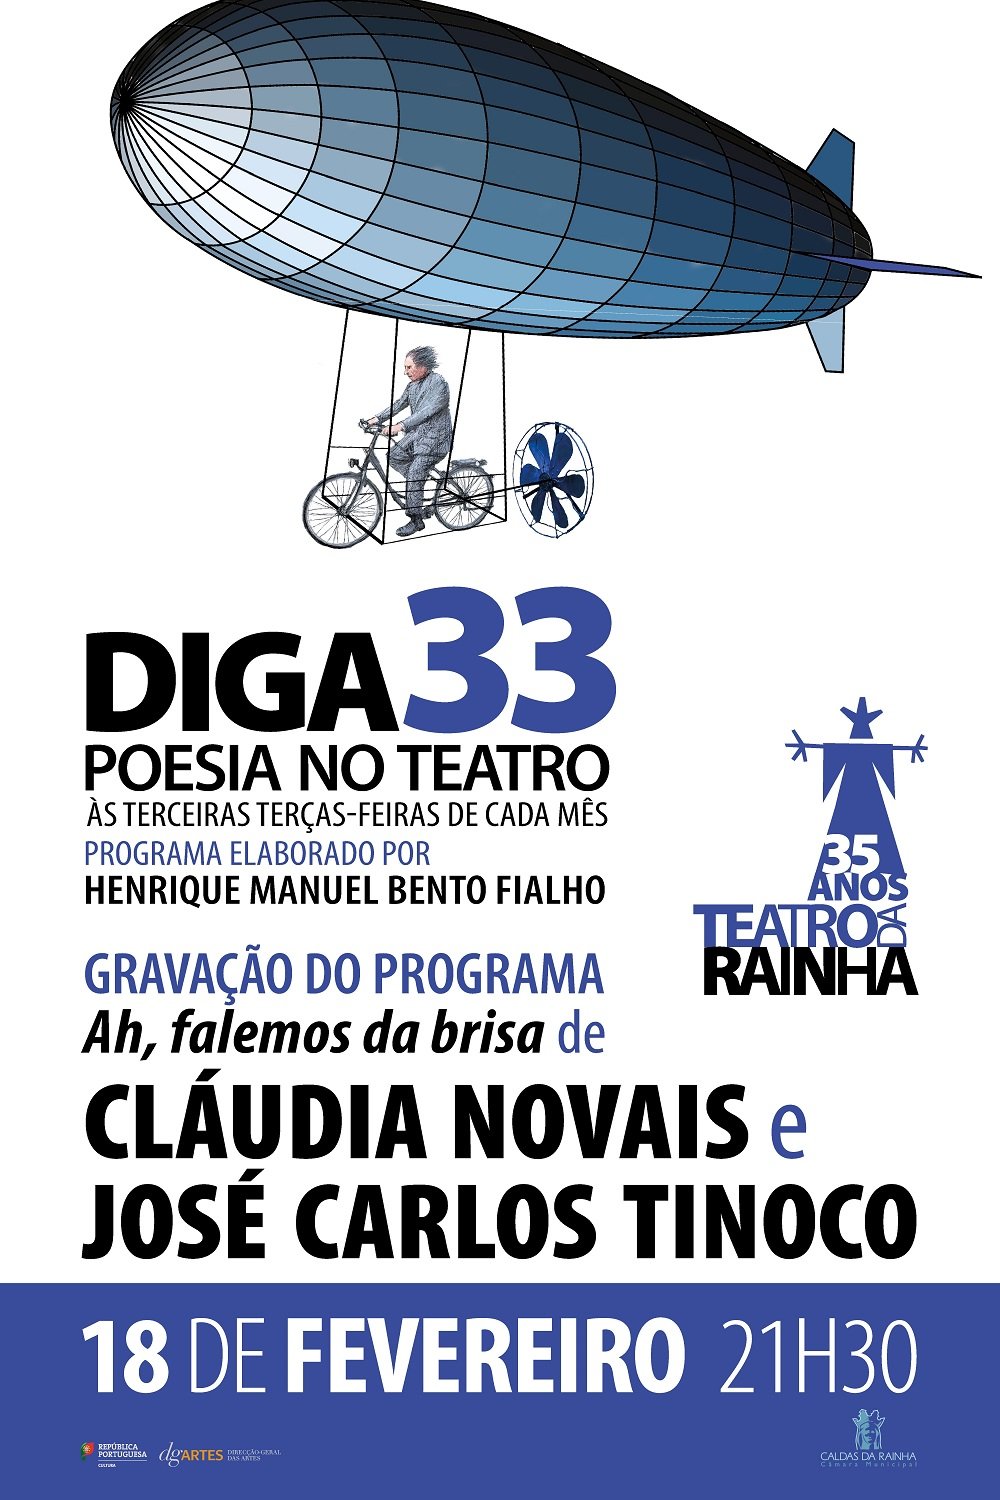 DIGA 33 com Cláudia Novais e José Carlos Tinoco